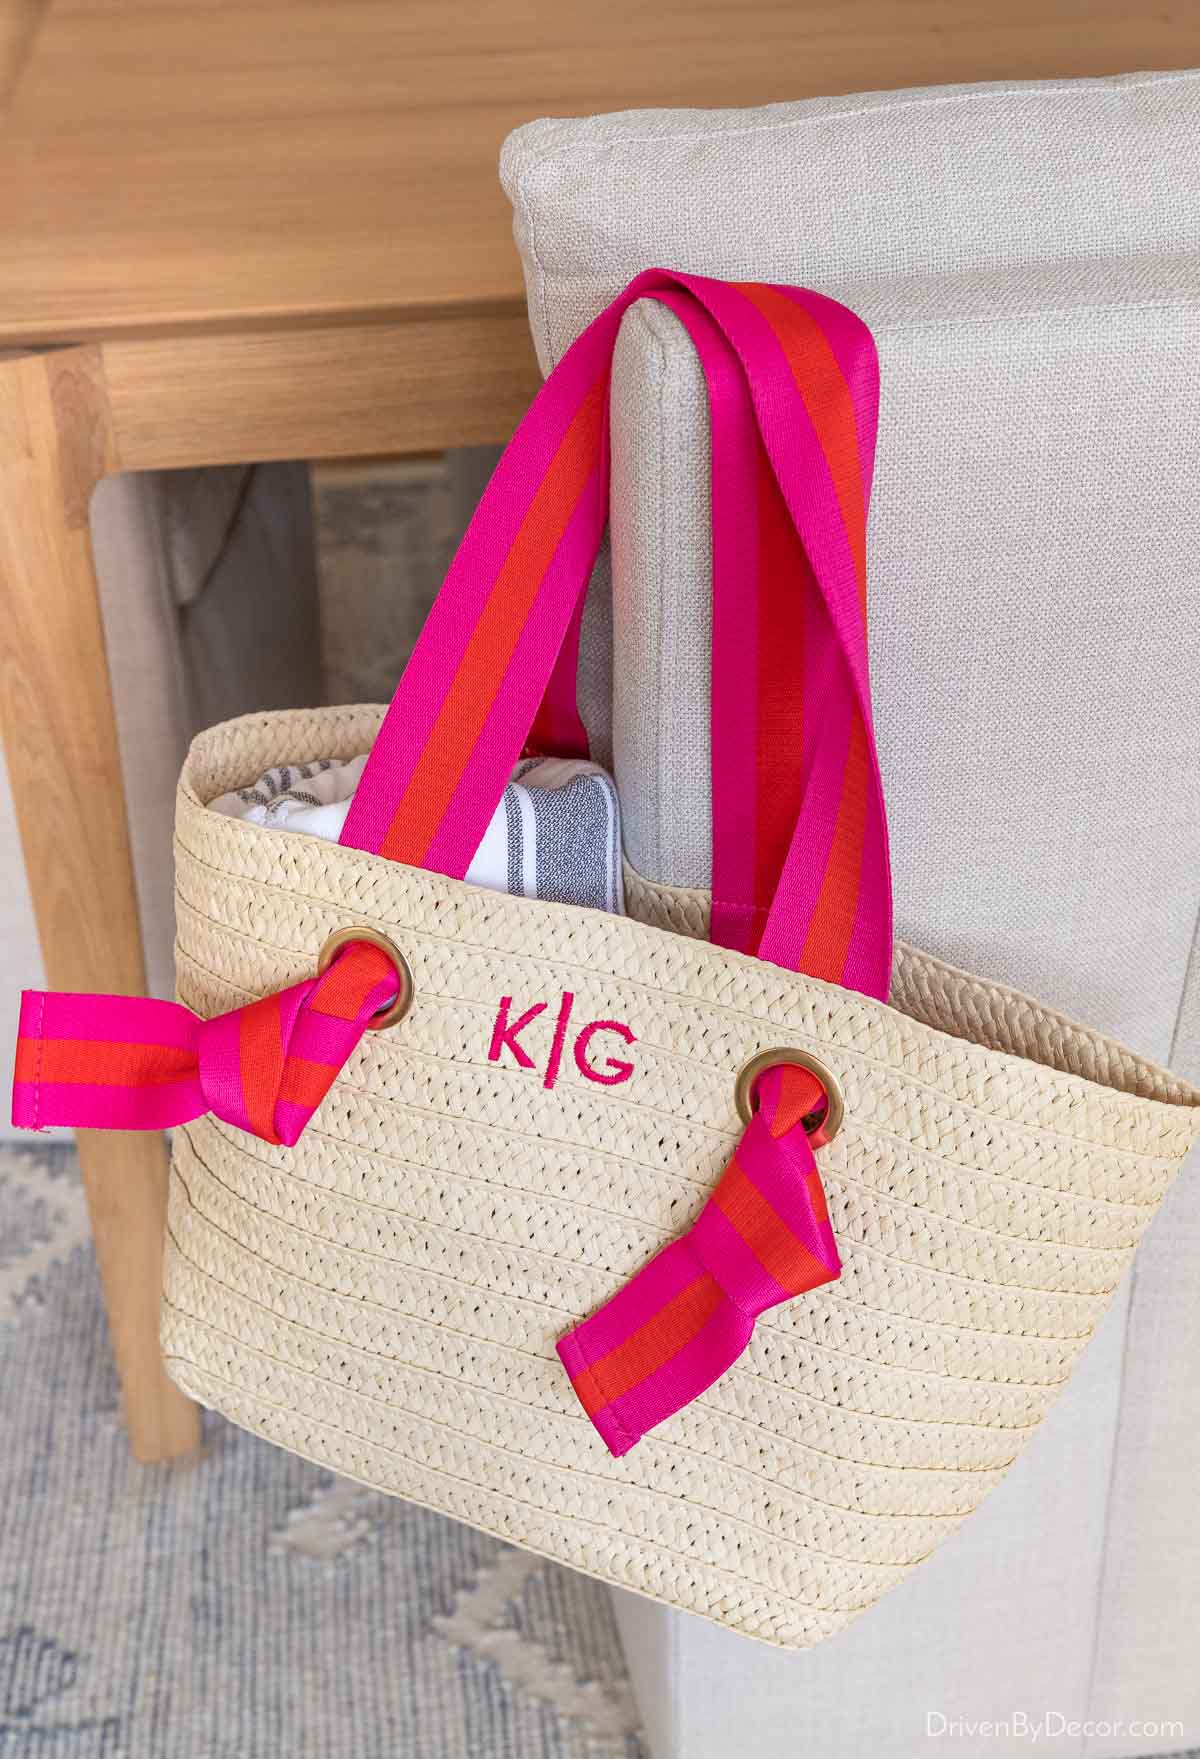 Соломенная пляжная сумка с лентой - идеальный подарок для нее, чтобы добавить ее в список желаний на Рождество.